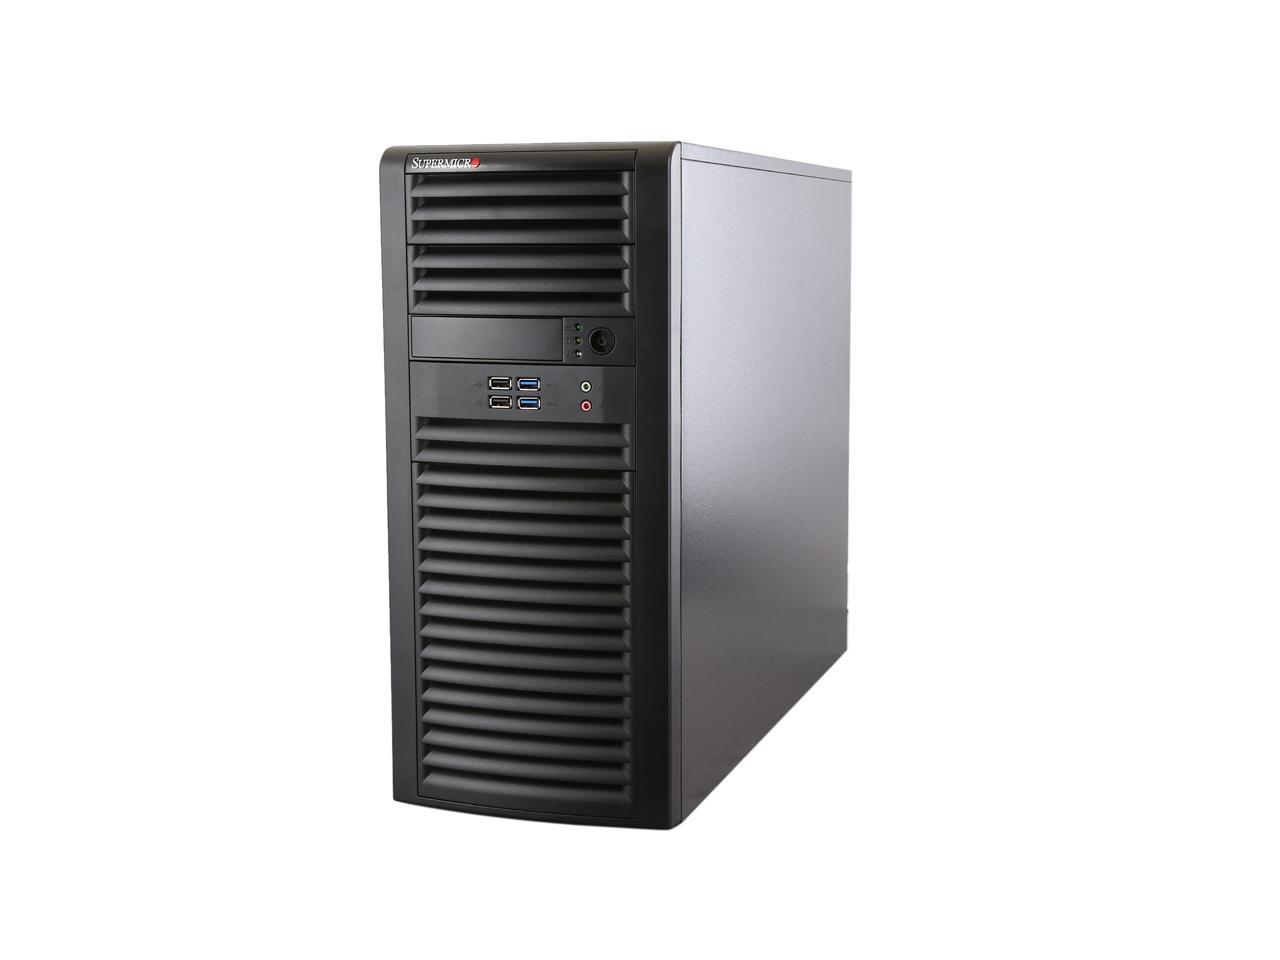 SUPERMICRO SYS-7038A-I Mid-Tower Server Barebone - Newegg.com